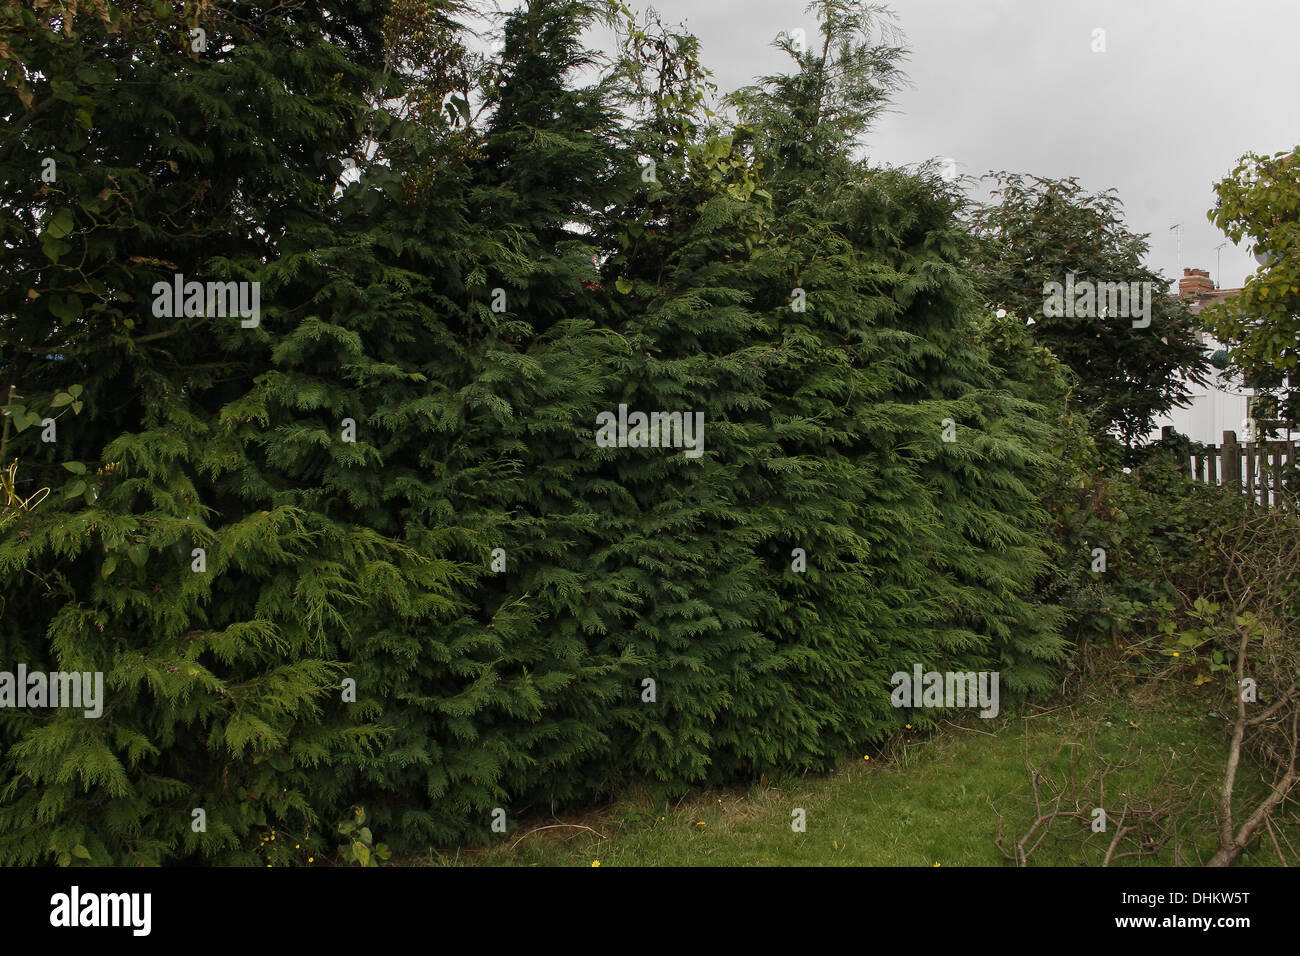 hedgerow of conifers in garden Leylandii Stock Photo